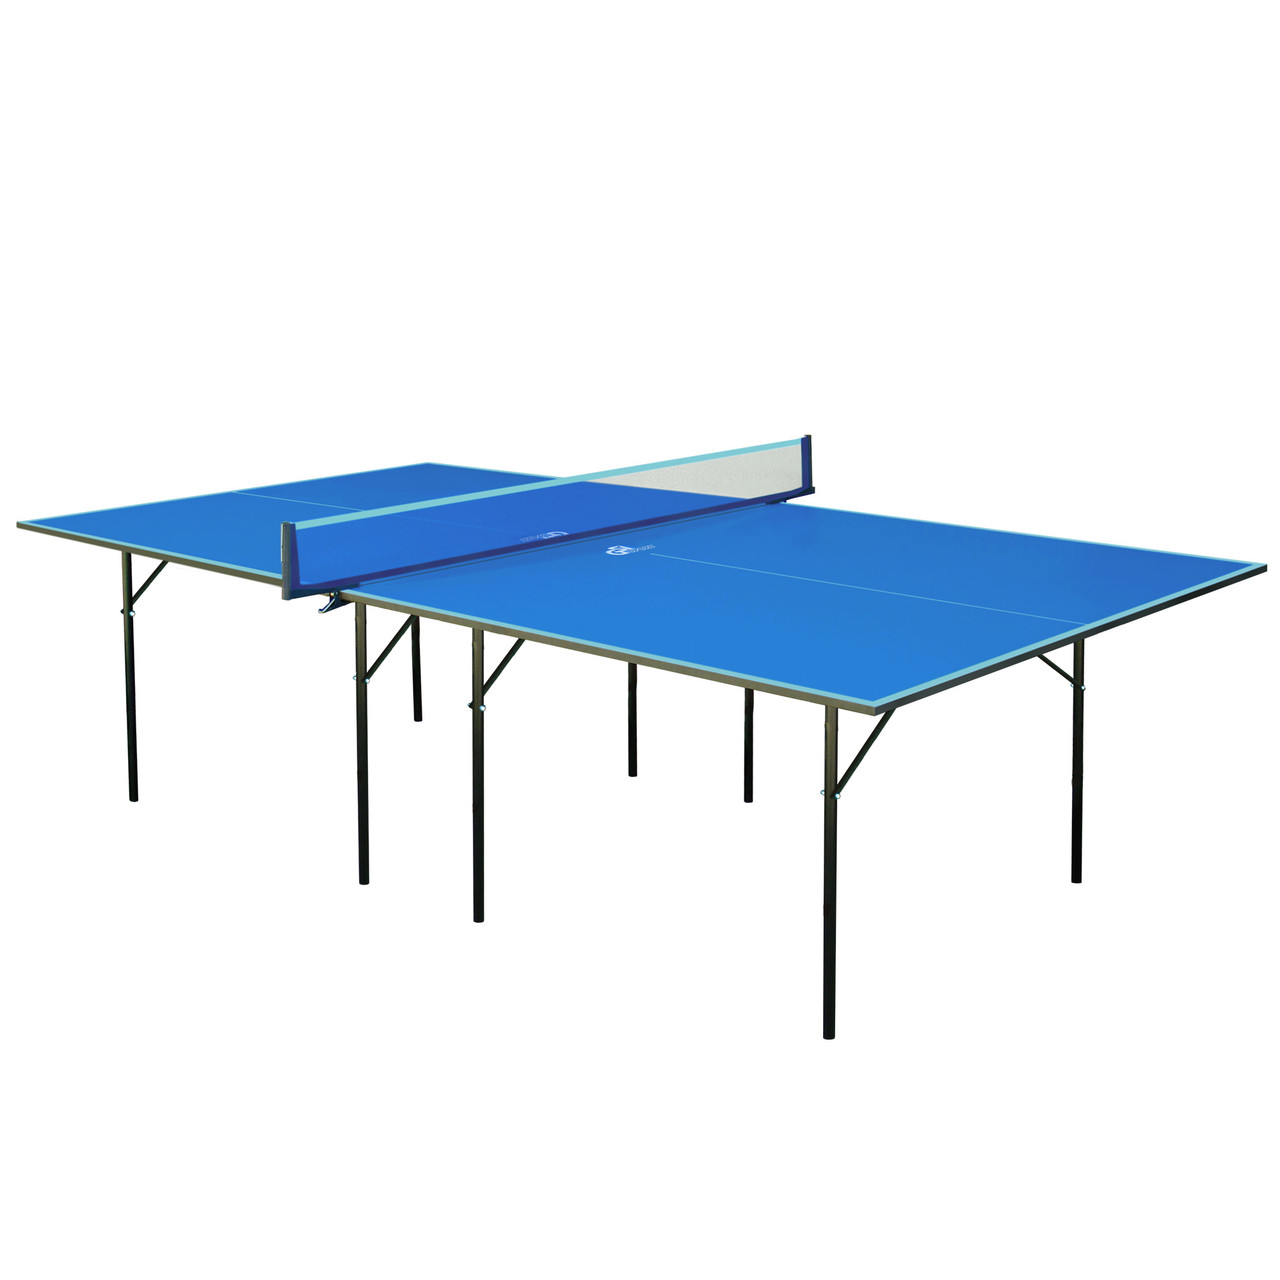 Тенісний стіл GSI-MT Sport-4689 (Gk-1) (ДСП толщина16мм, метал, розмір 2,74х1,52х0,76м, синій)